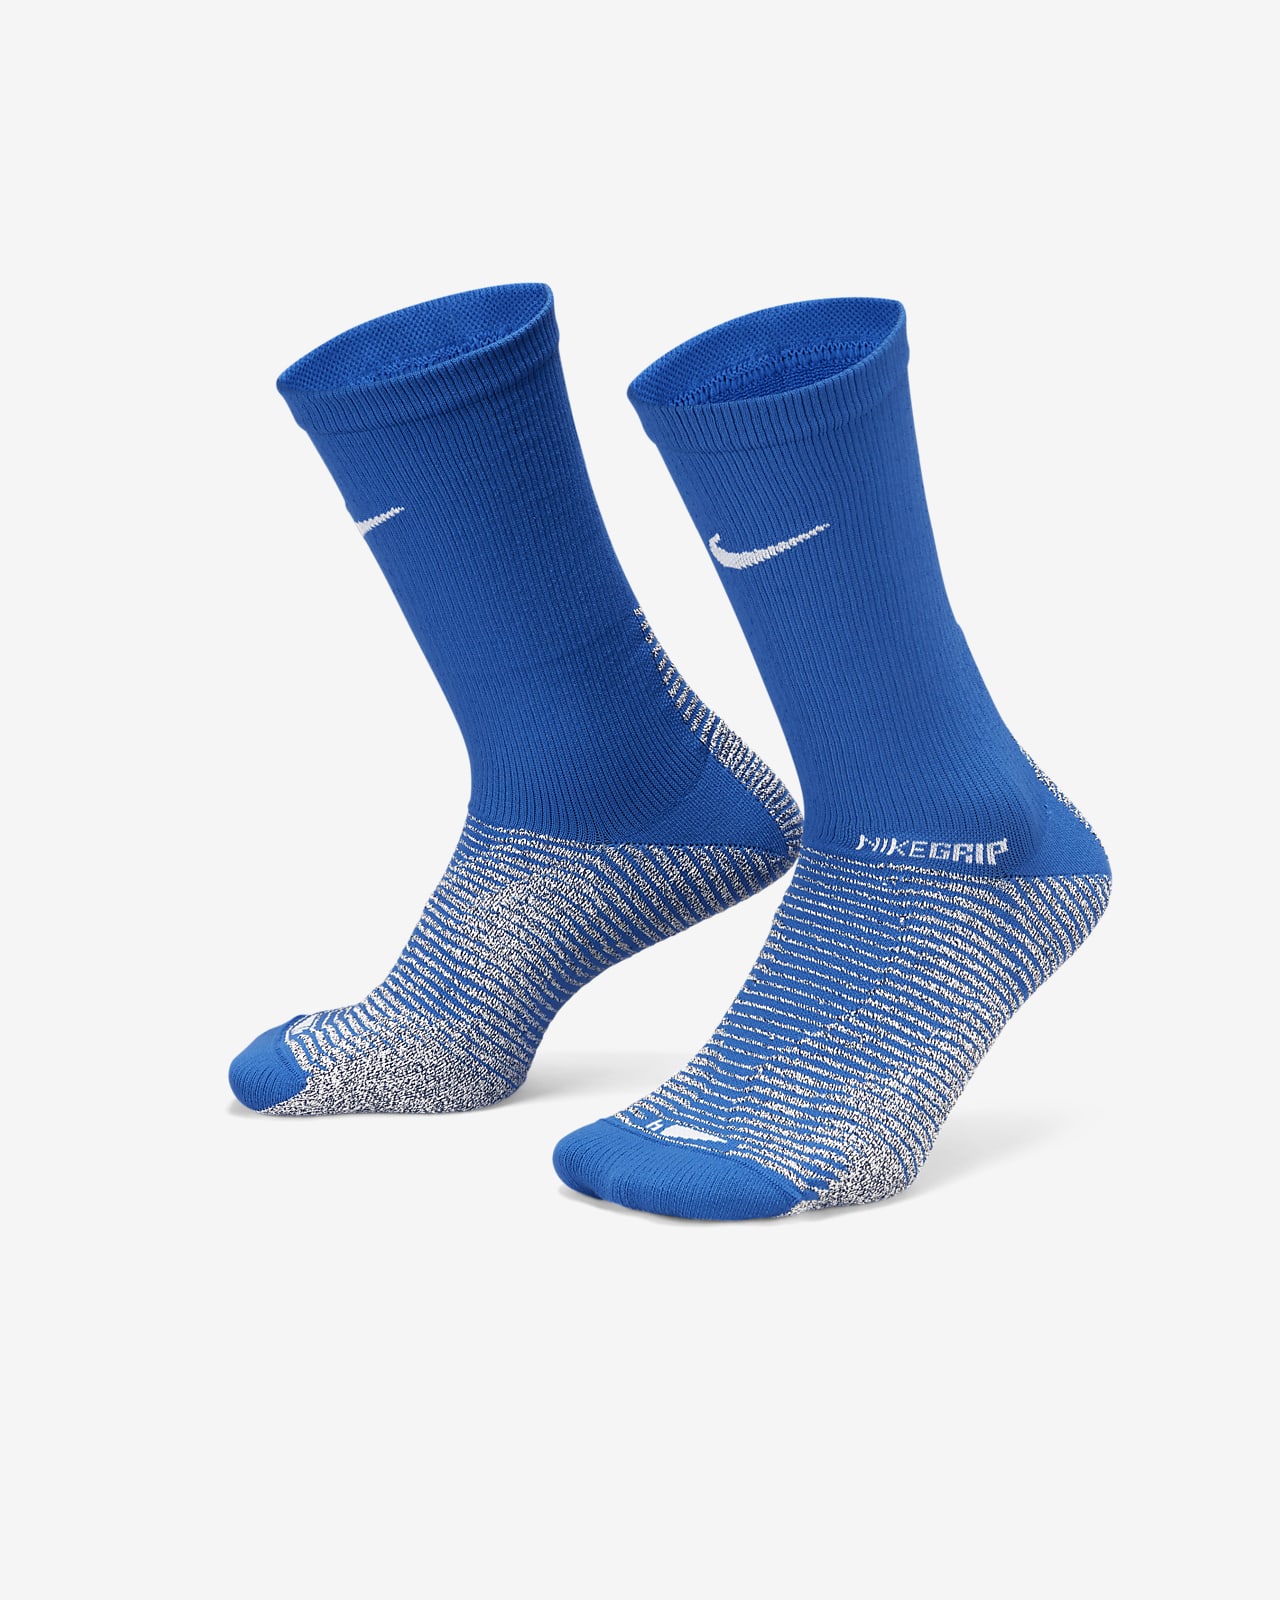 NikeGrip Strike Fußball-Crew-Socken